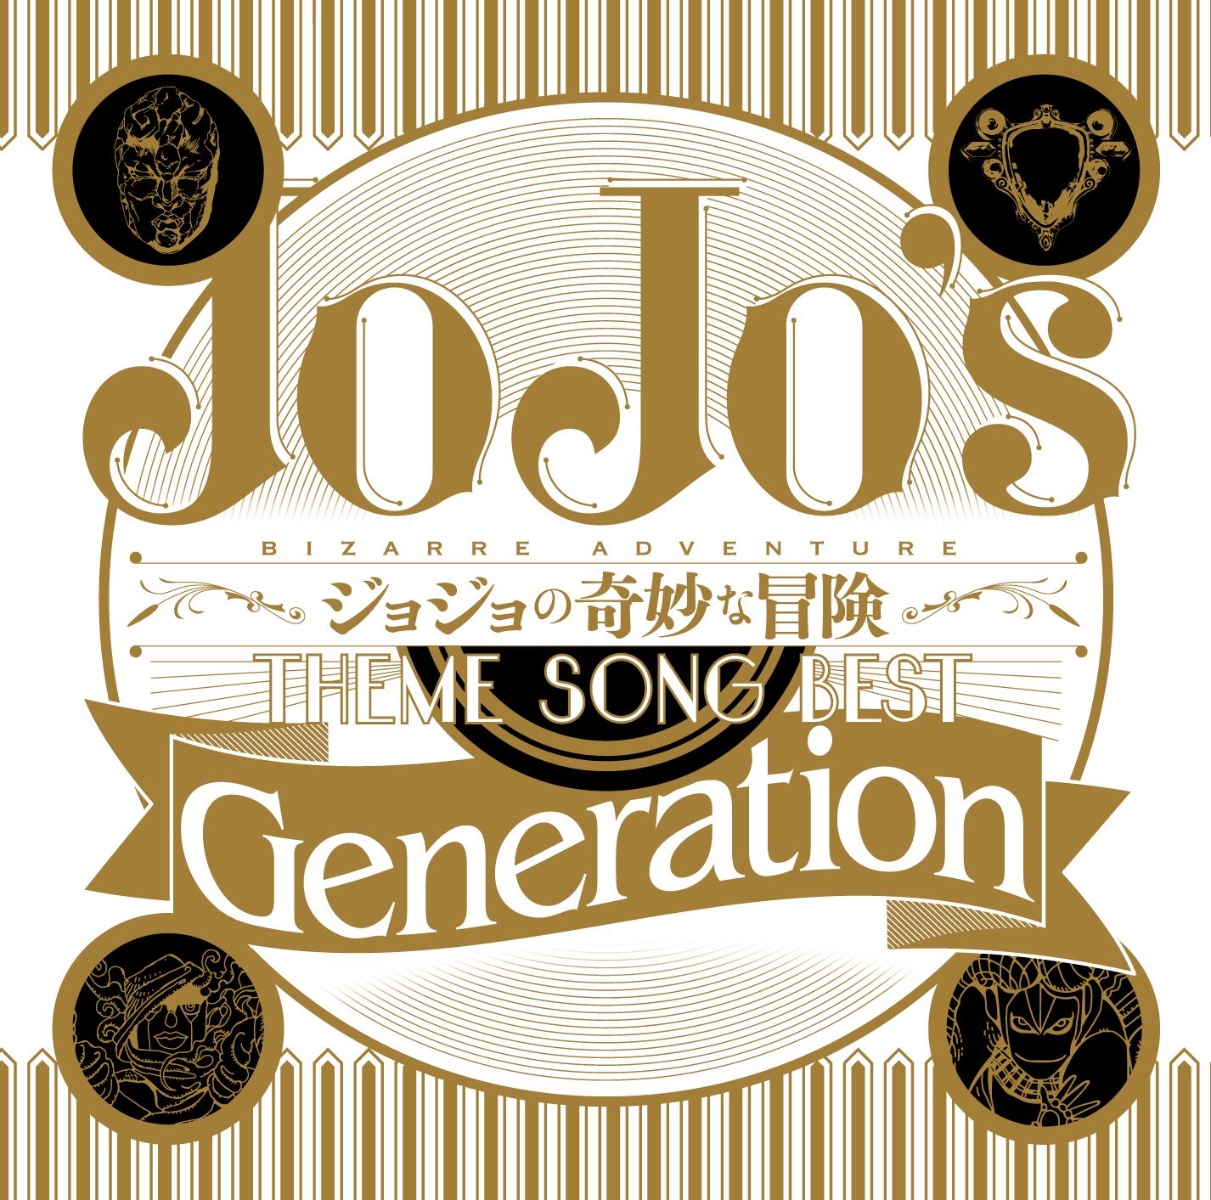 TVアニメ ジョジョの奇妙な冒険 THEME SONG BEST 「Generation」画像